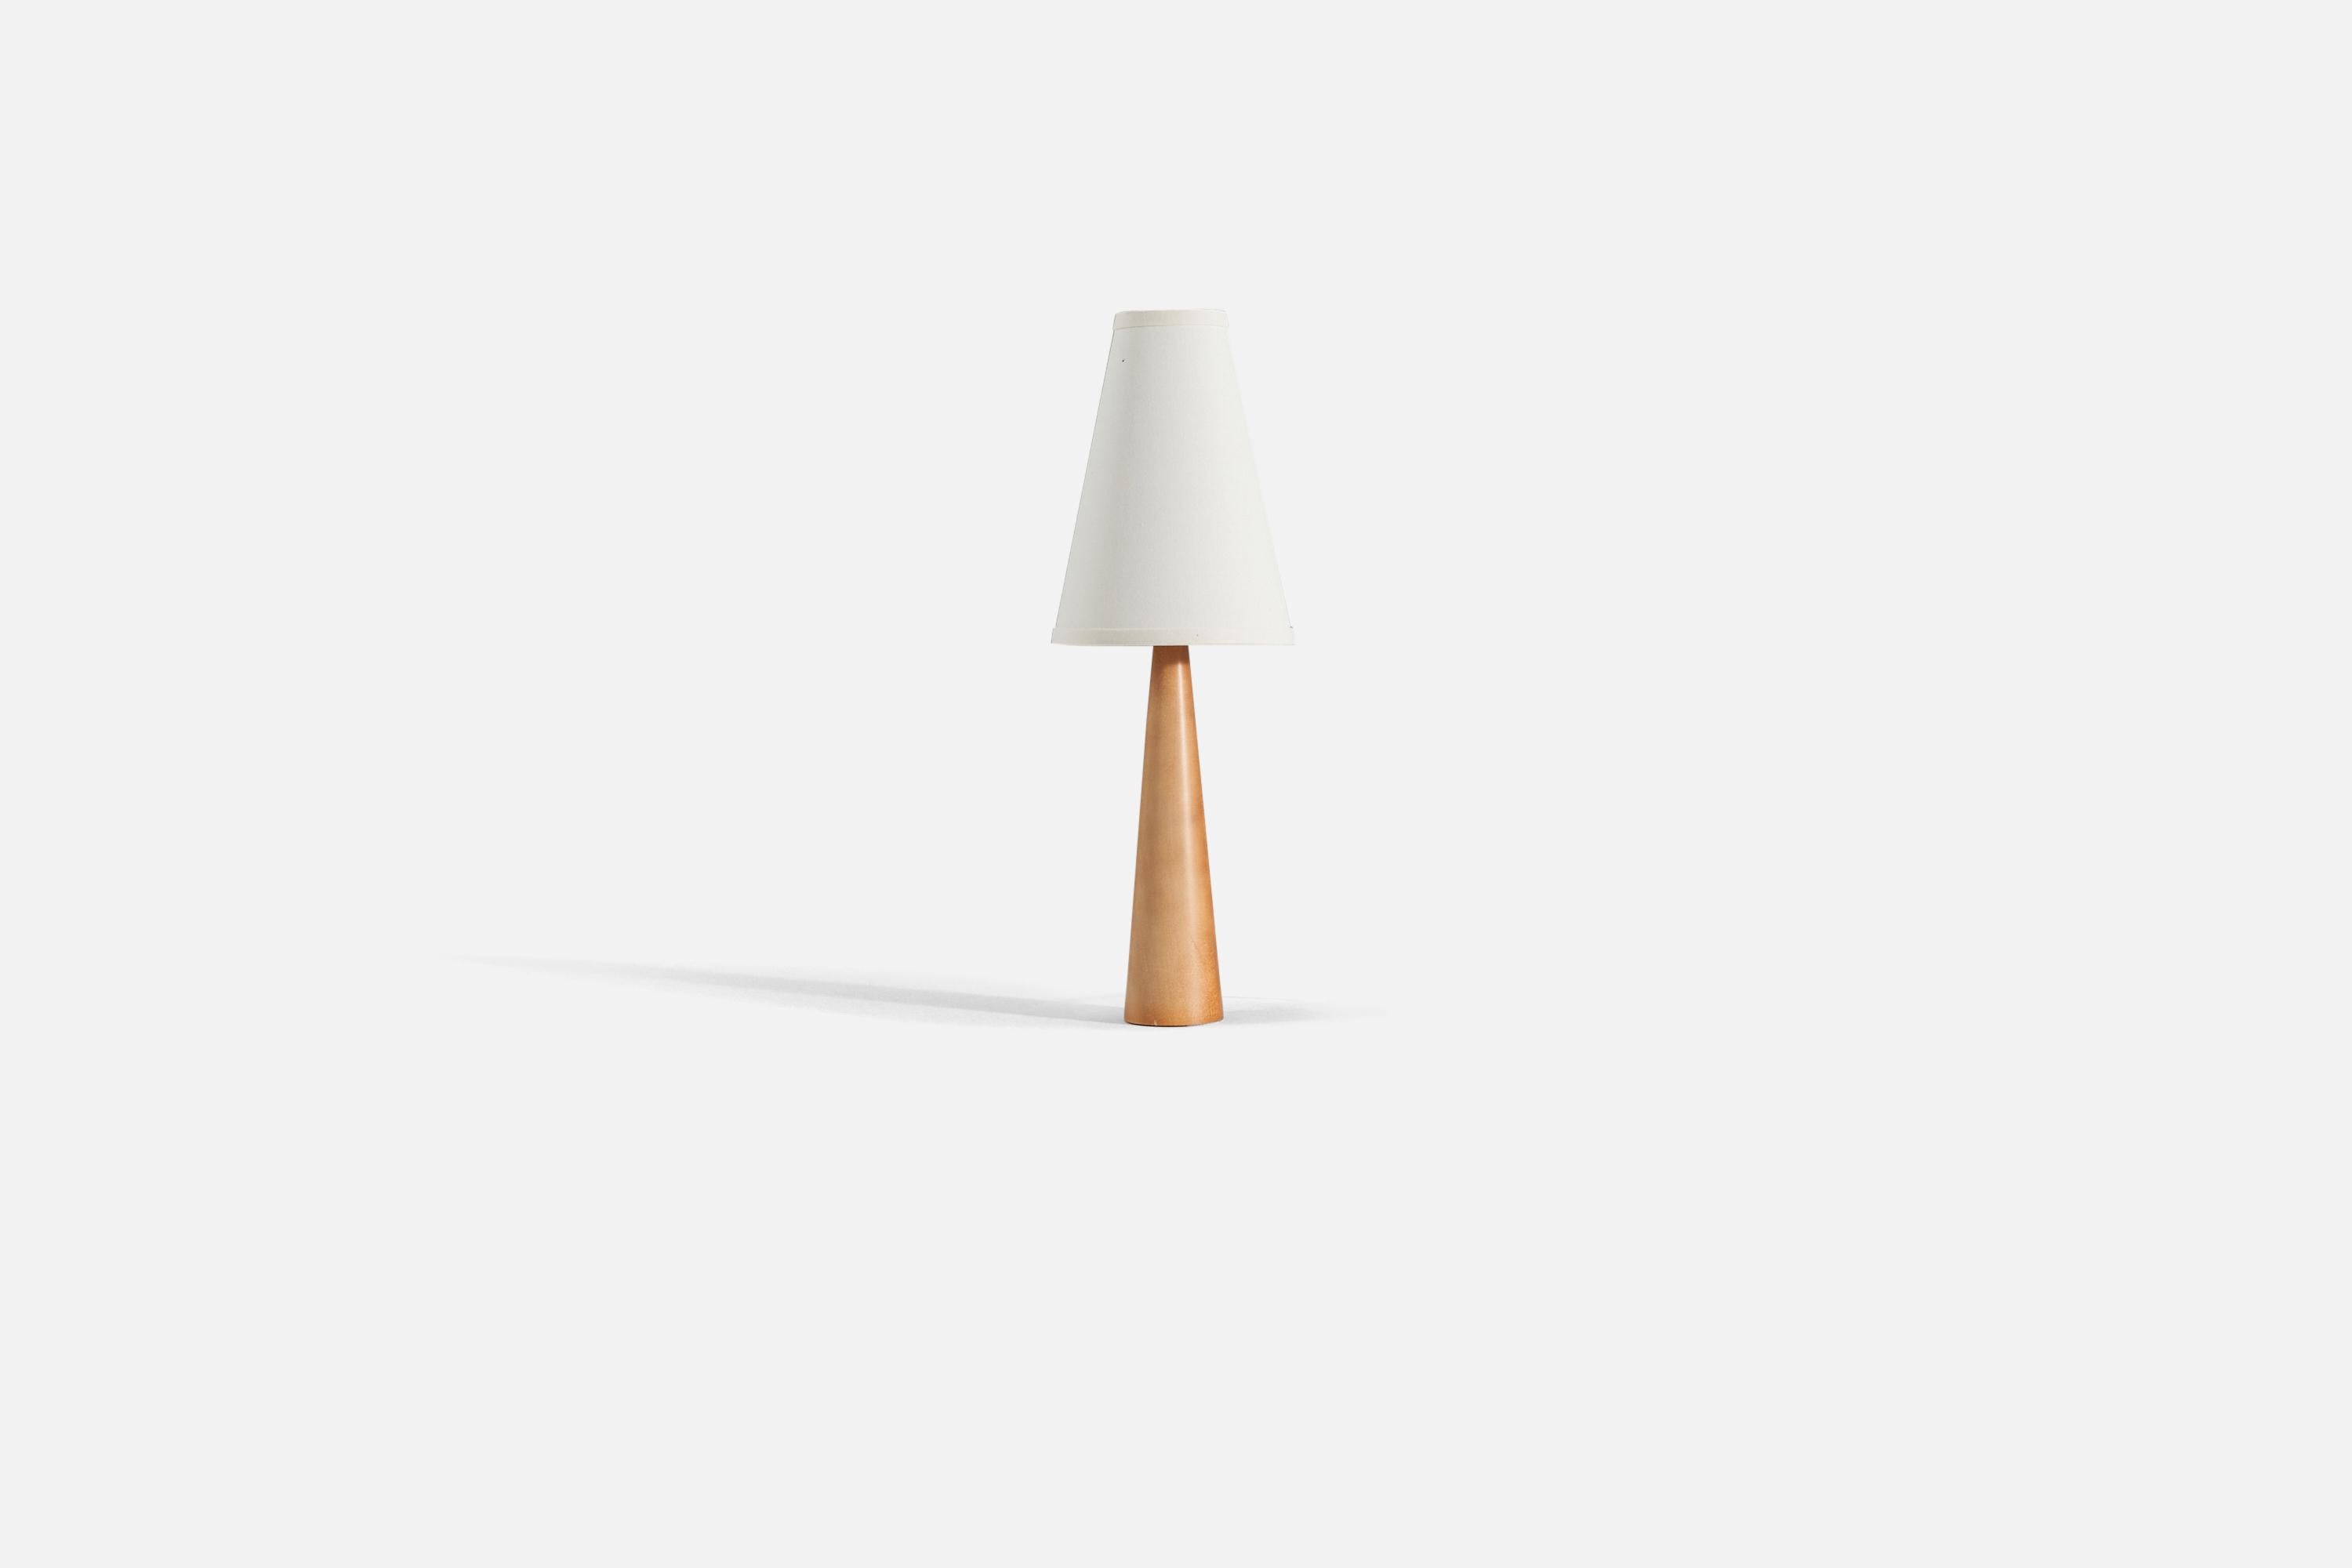 Une lampe de table en bois massif tourné, conçue et produite en Suède, dans les années 1970.

Abat-jour non compris. 

Les mesures indiquées sont celles de la lampe uniquement. 
Pour référence. 
Abat-jour : 3.25 x 7.25 x 10
Lampe avec